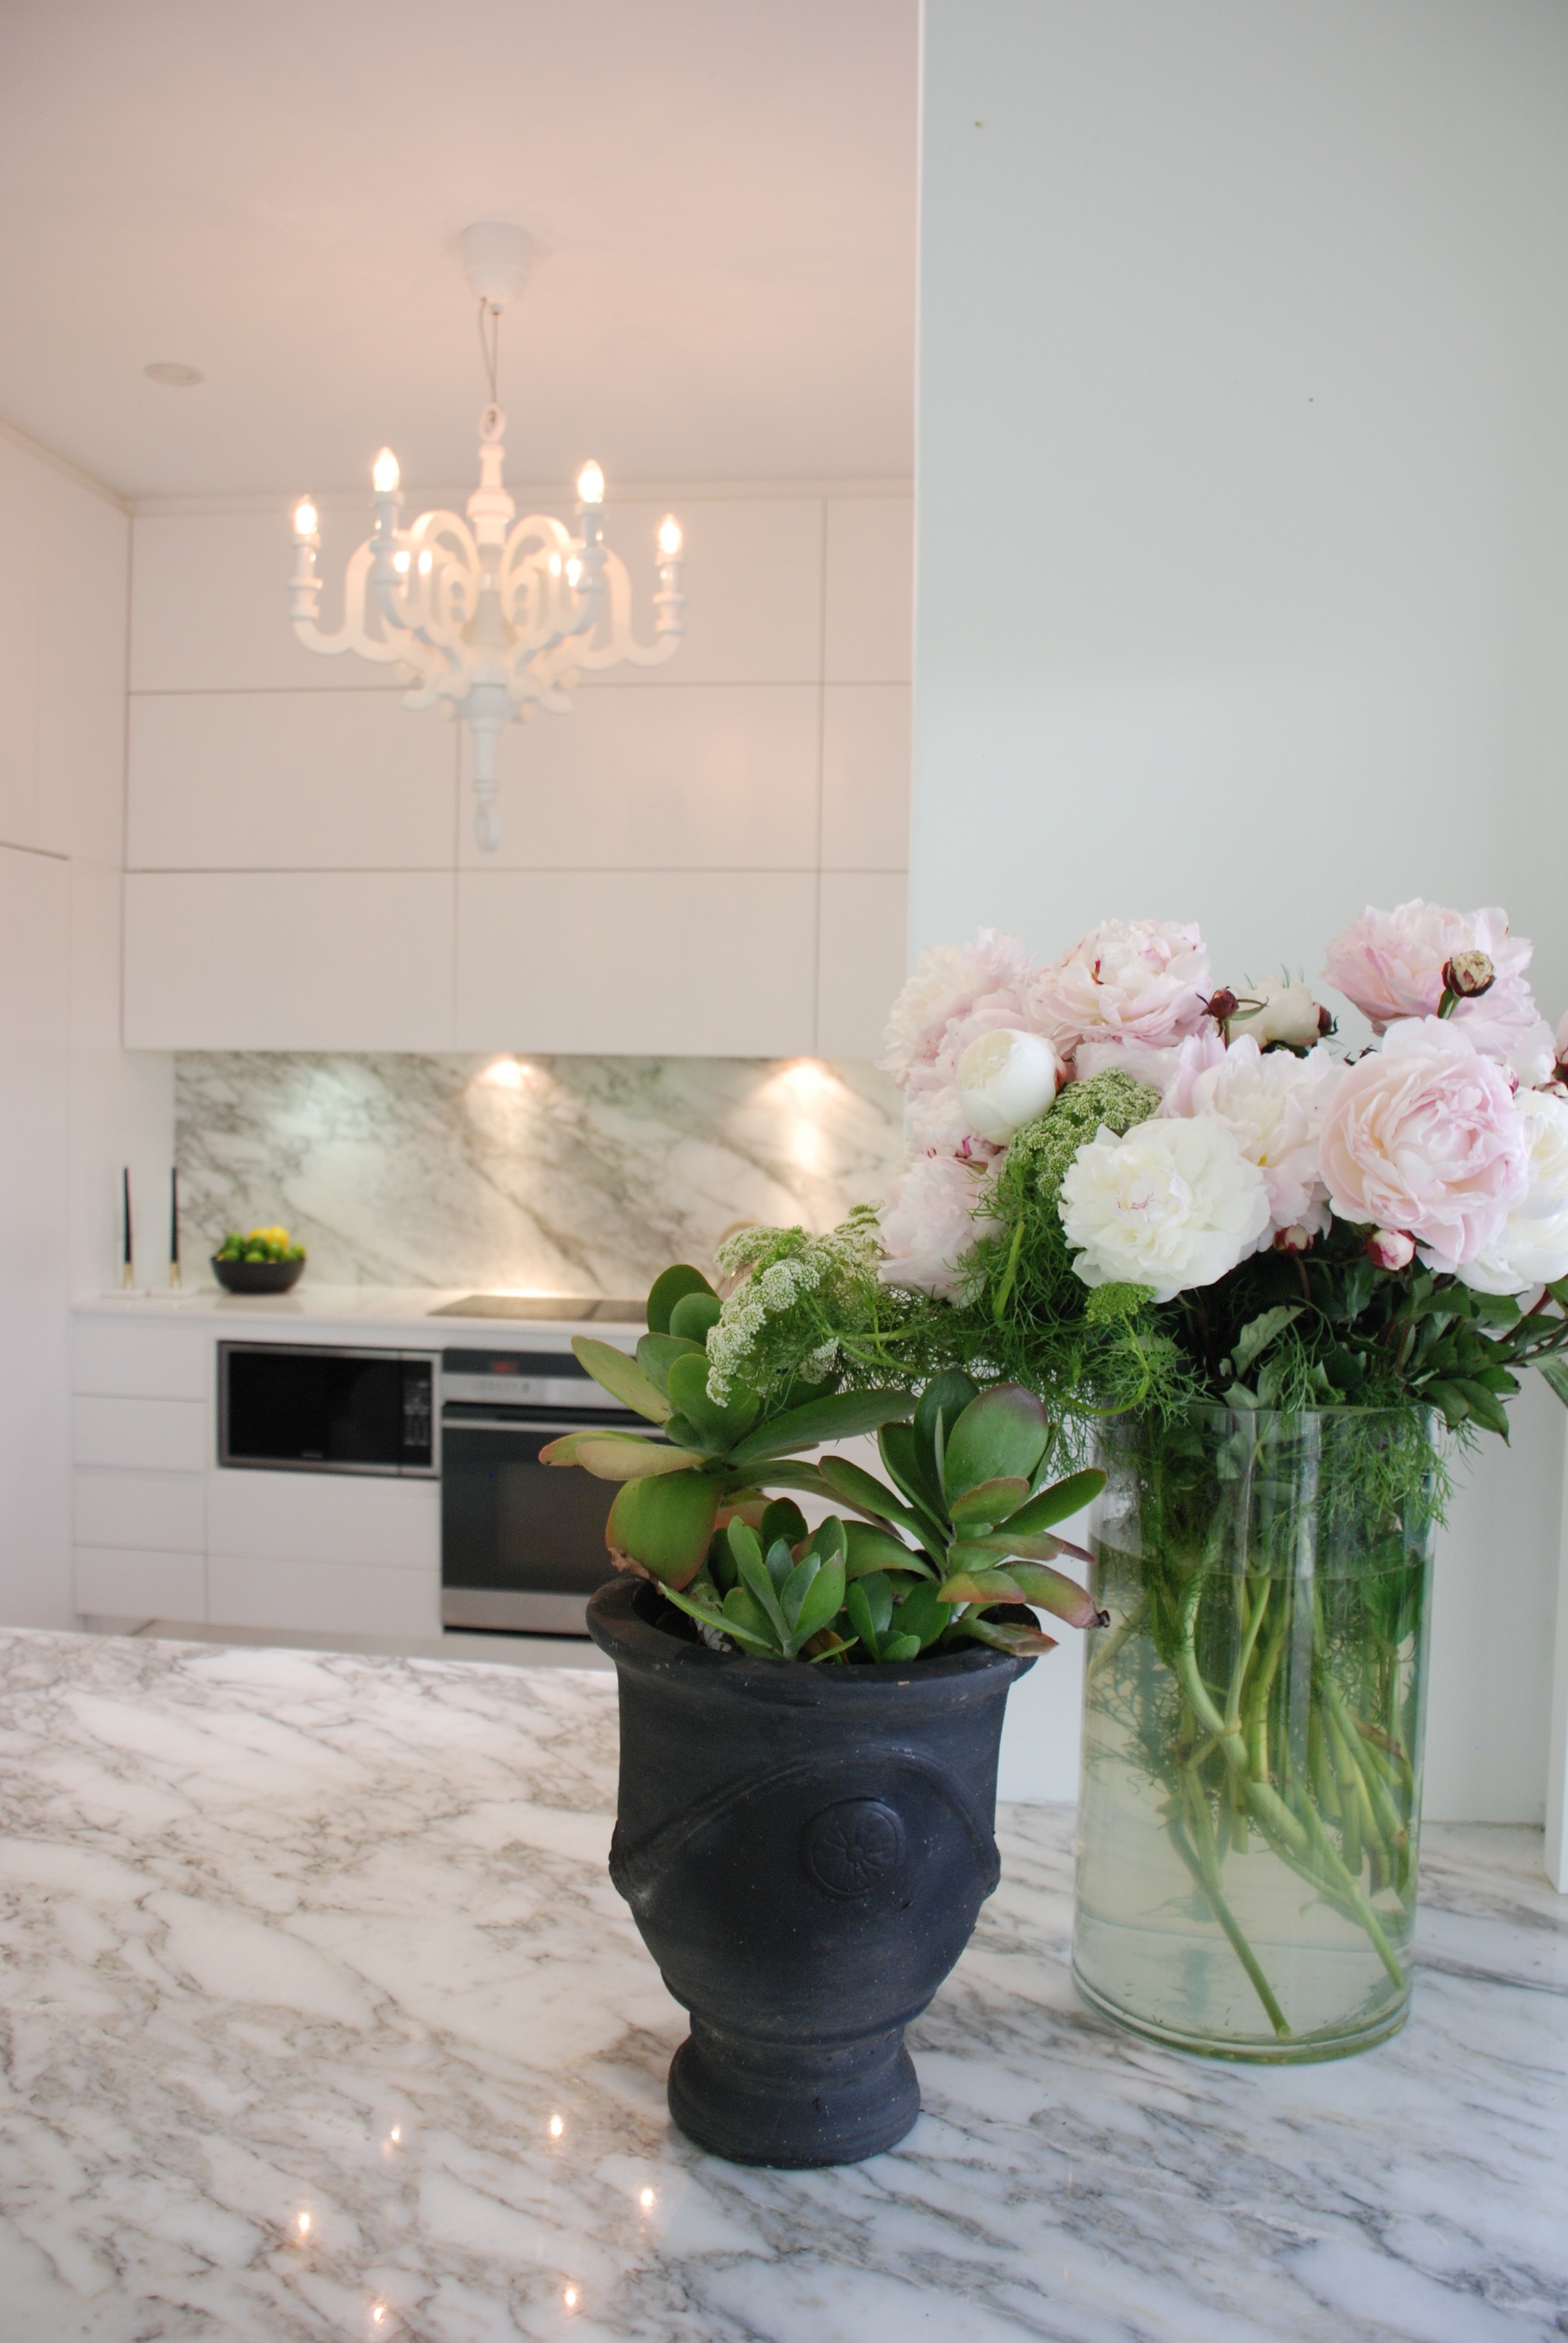 k+v interior design kitchen white marble flowers styling detail